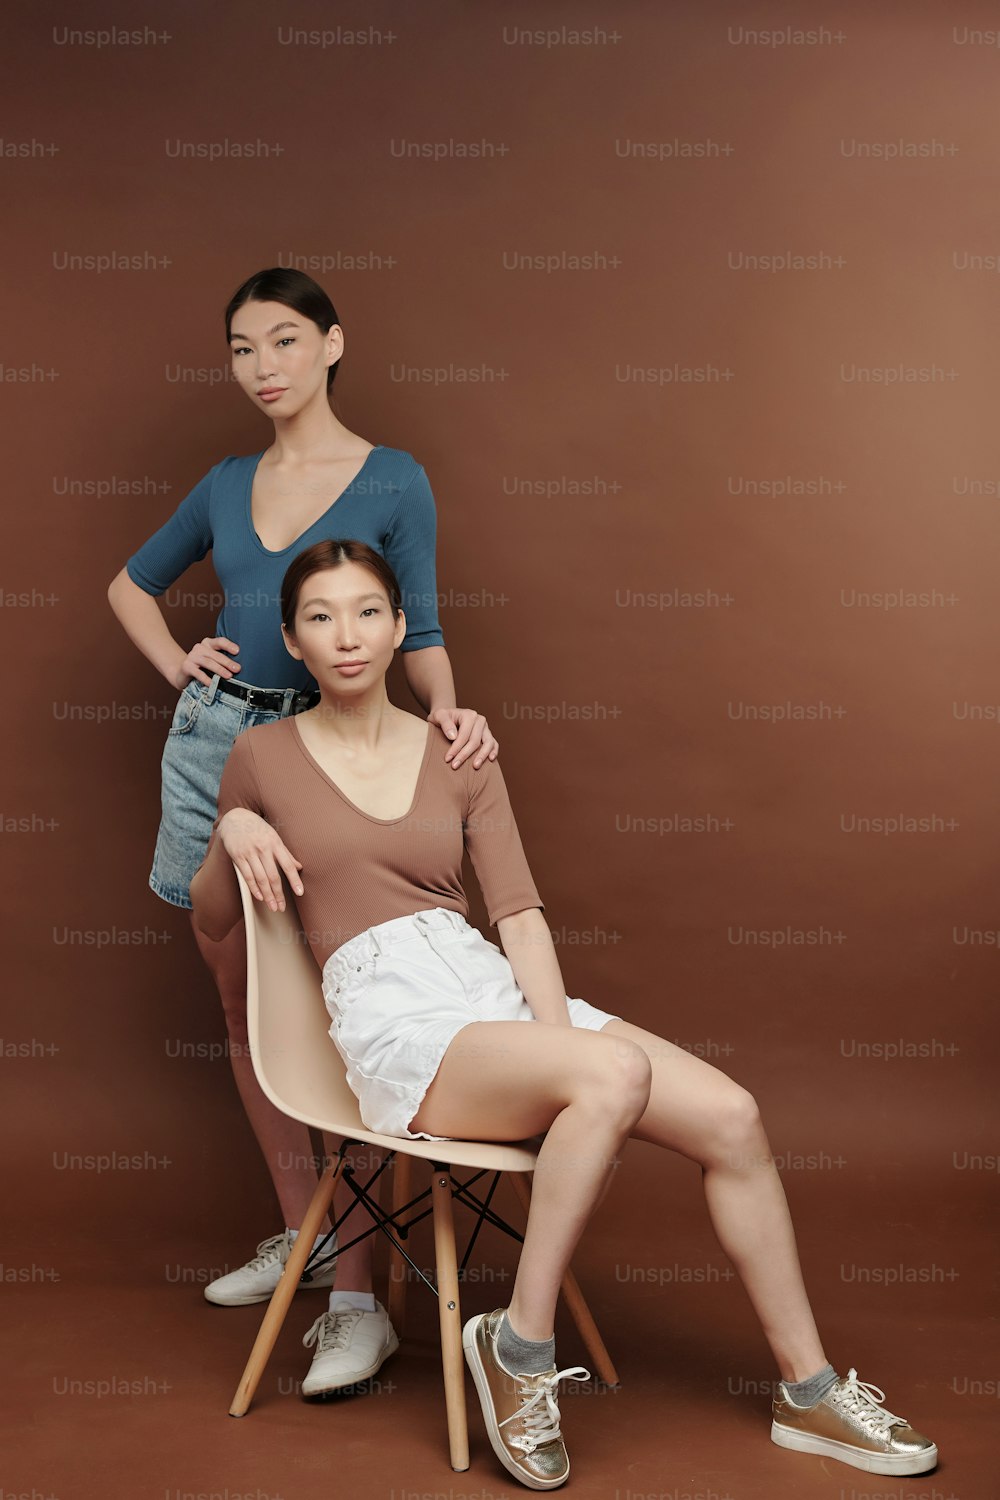 Junge ernsthafte brünette weibliche Zwillinge in Freizeitkleidung, die dich ansehen, während einer von ihnen auf einem weißen Plastikstuhl im Studio mit braunen Wänden sitzt